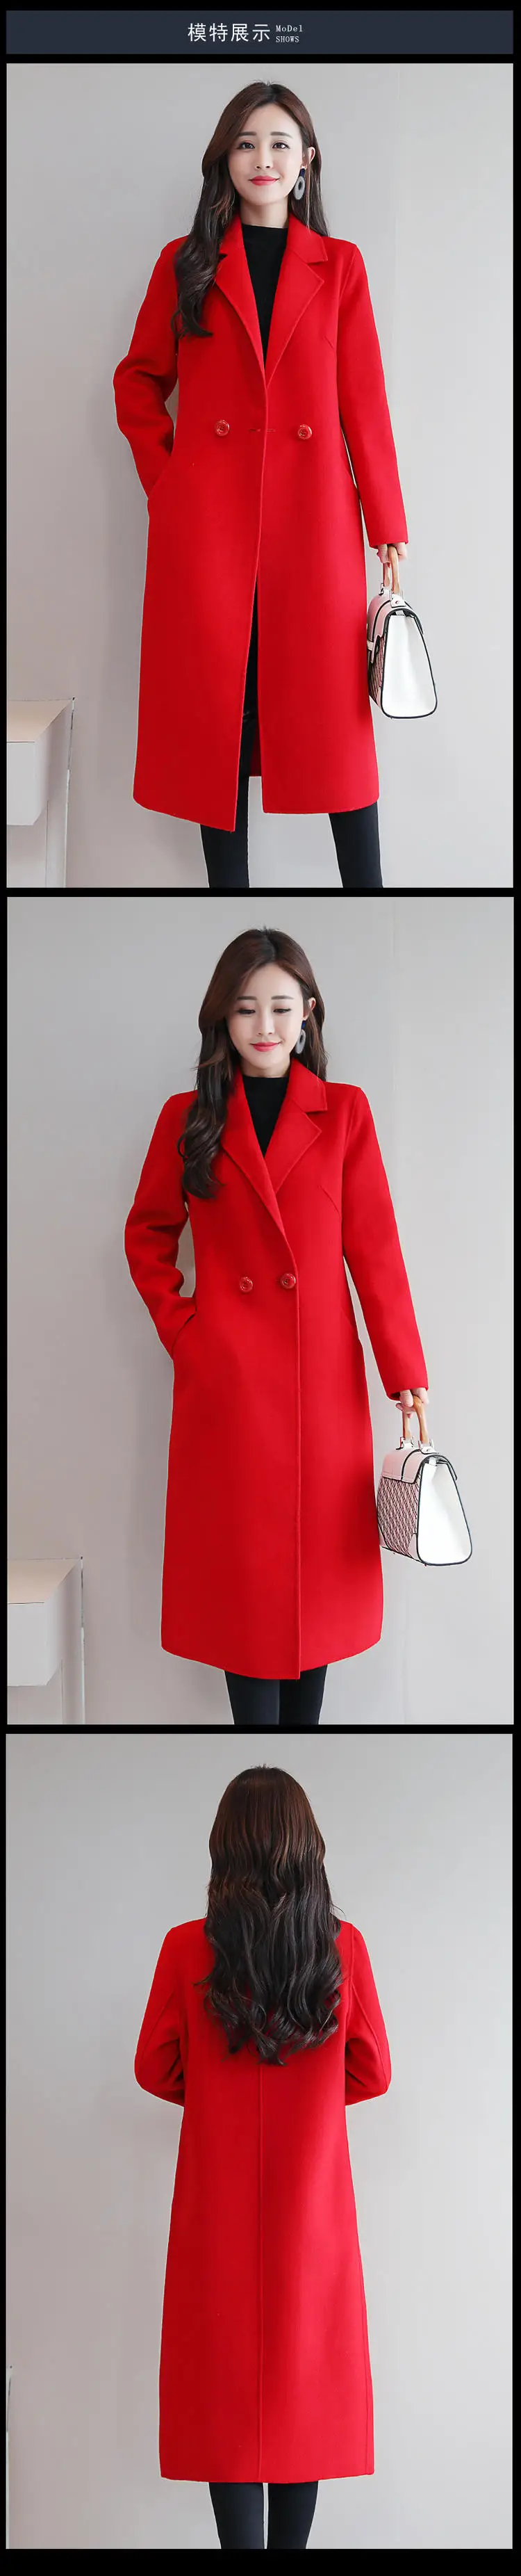 Новое зимнее шерстяное пальто Для женщин высокое качество длинный полушерстяные пальто леди Повседневное с отложным воротником шерстяное пальто Верхняя одежда элегантная одежда